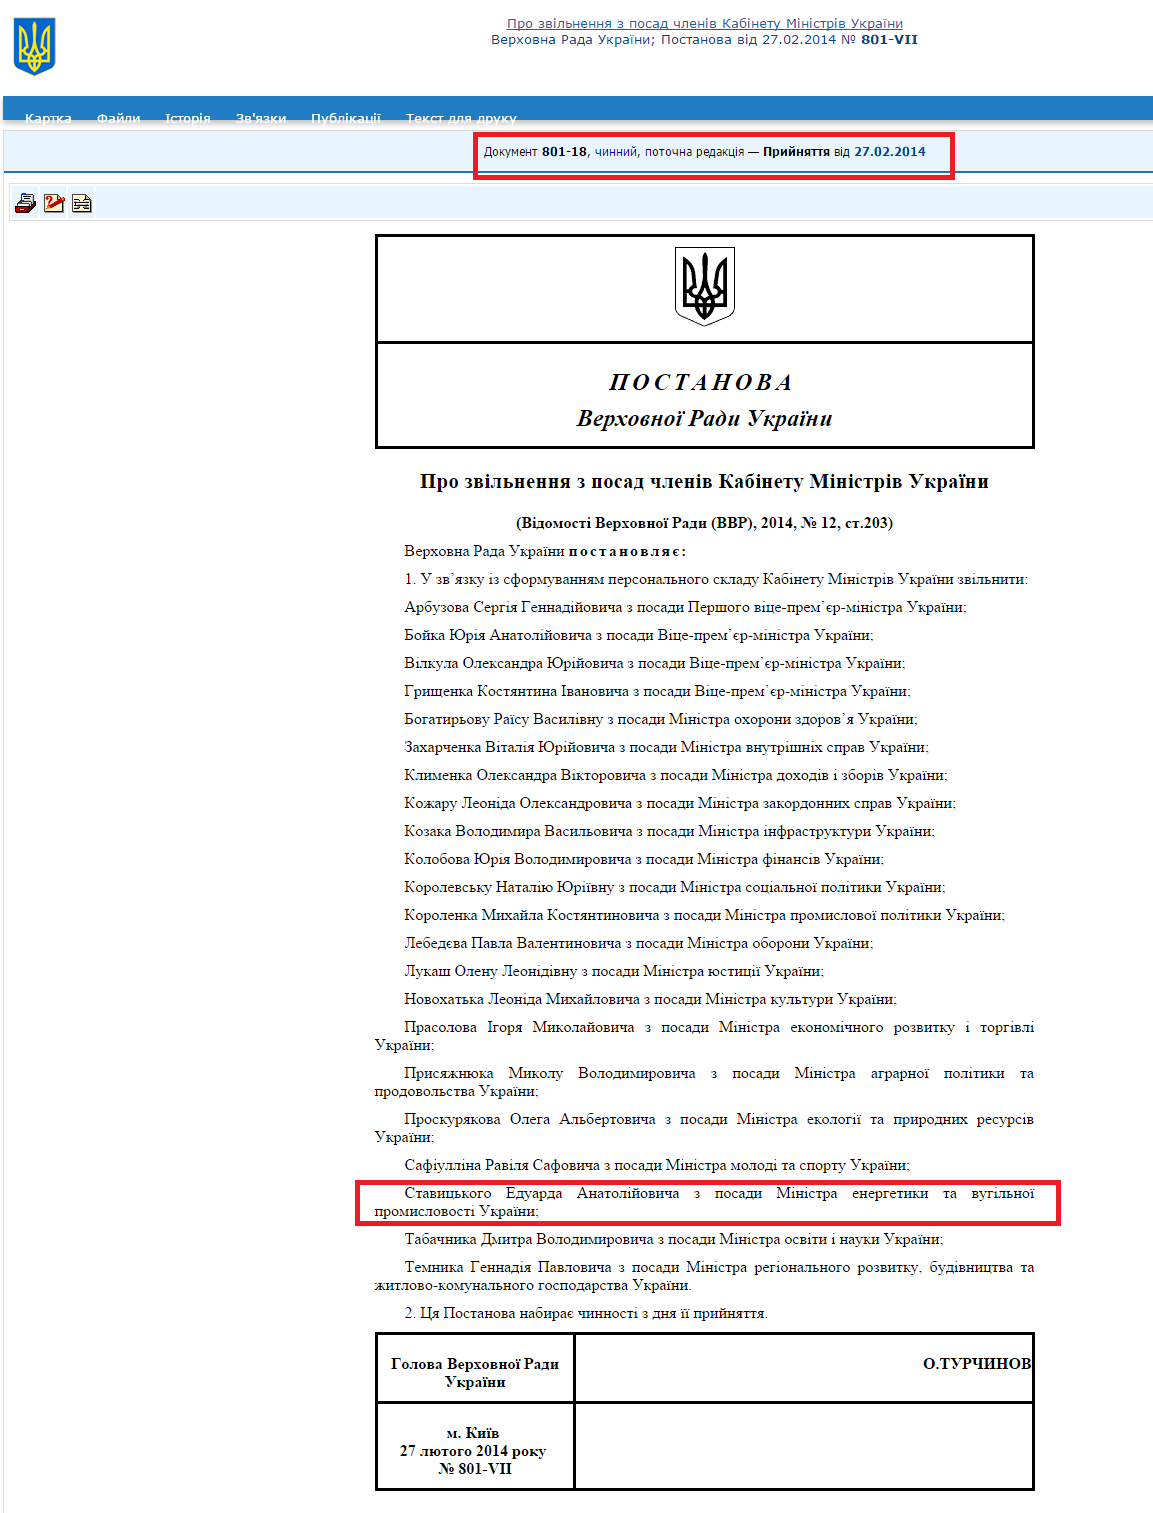 http://zakon1.rada.gov.ua/laws/show/801-18